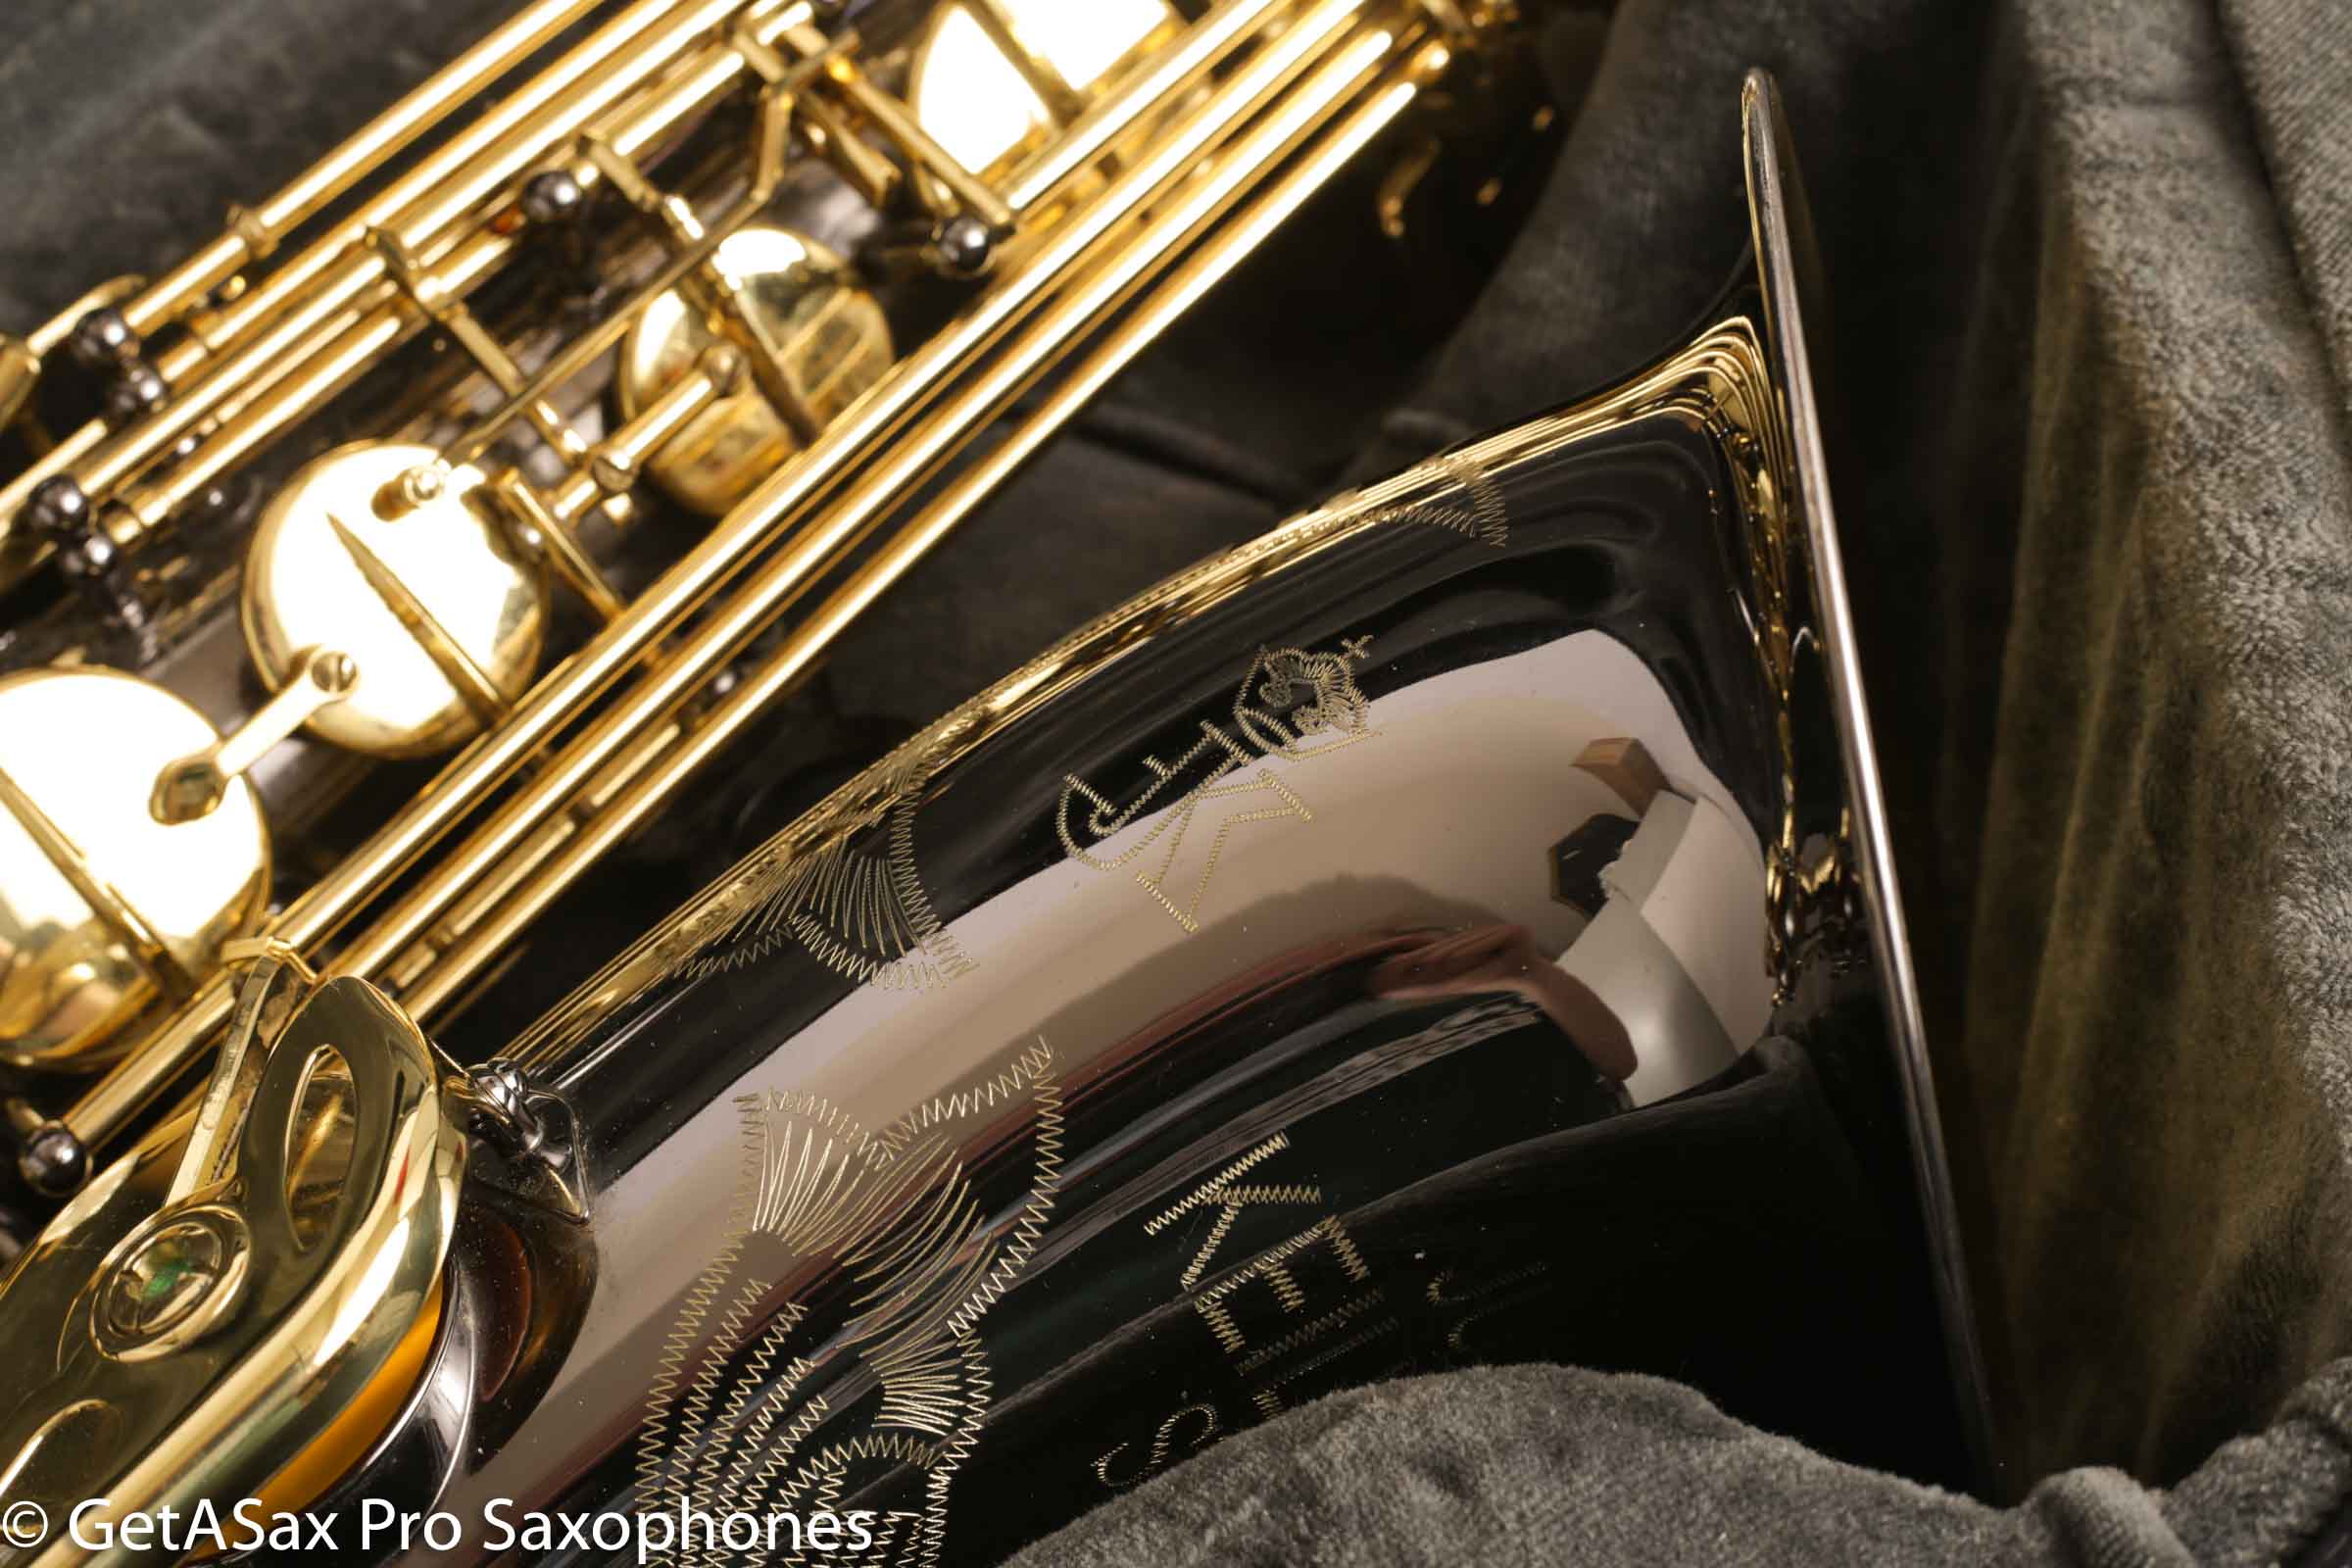 used keilwerth saxophones